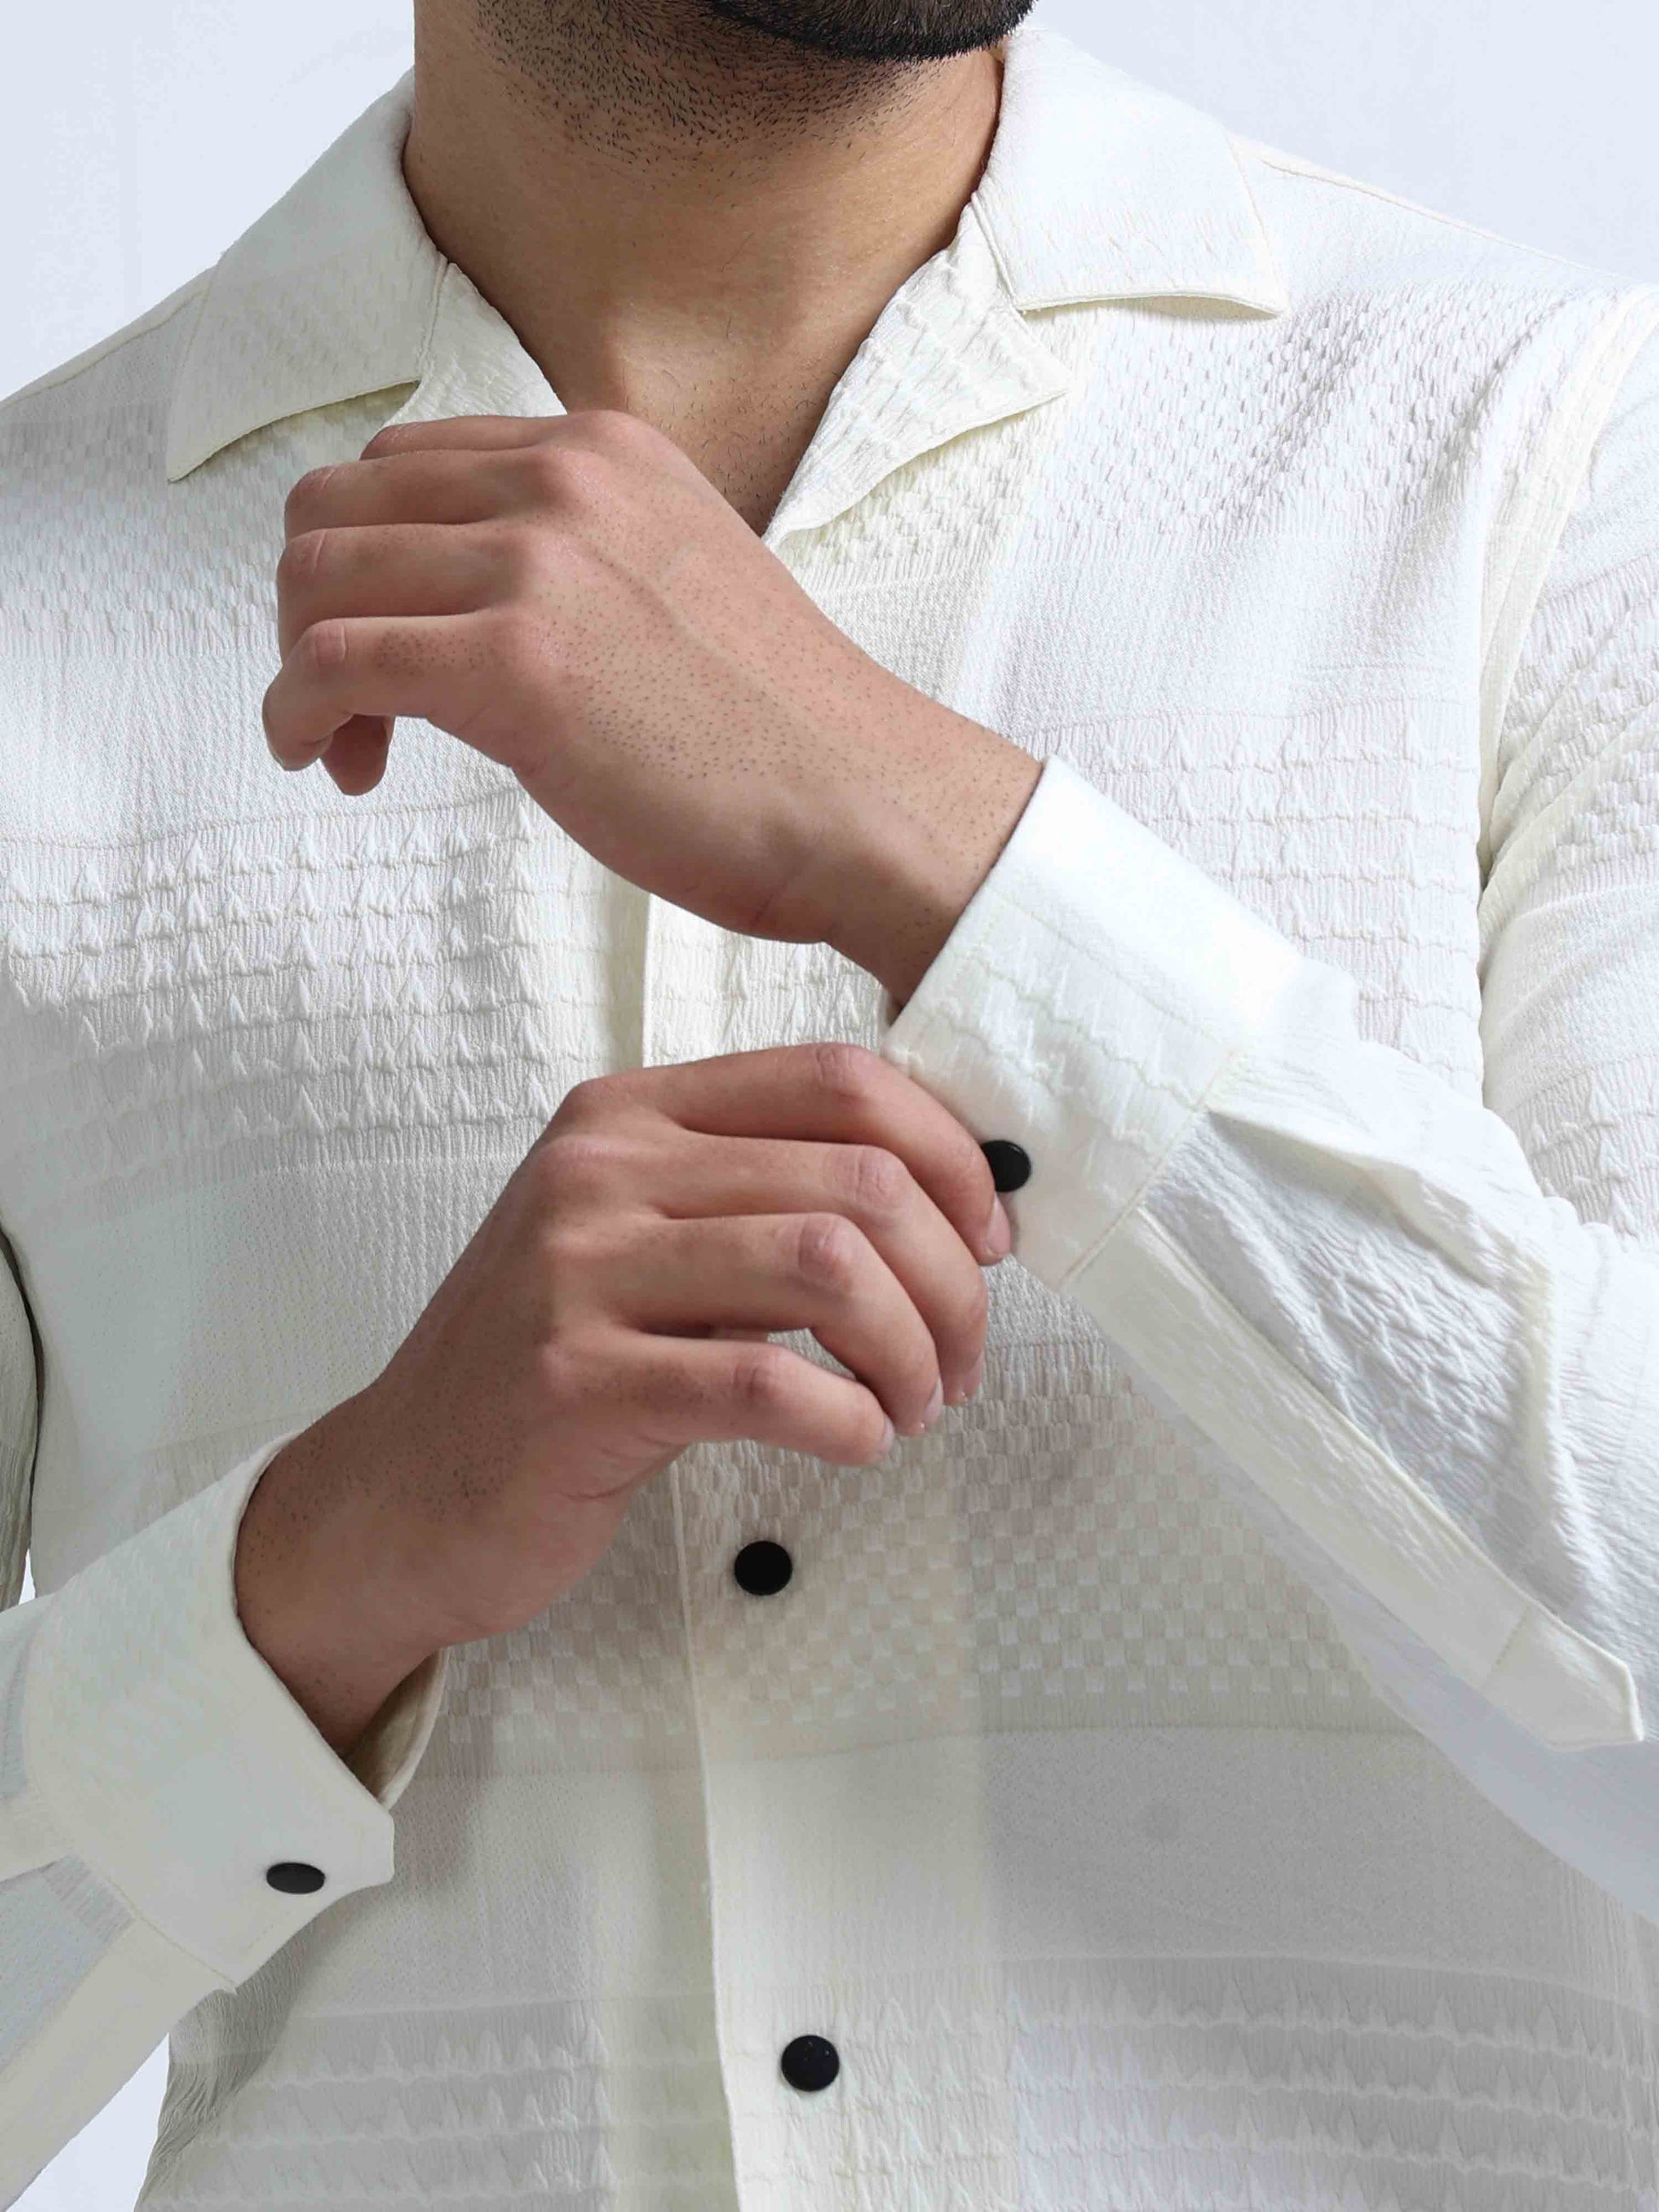 Cream Full Sleeve Lycra Shirt For Men